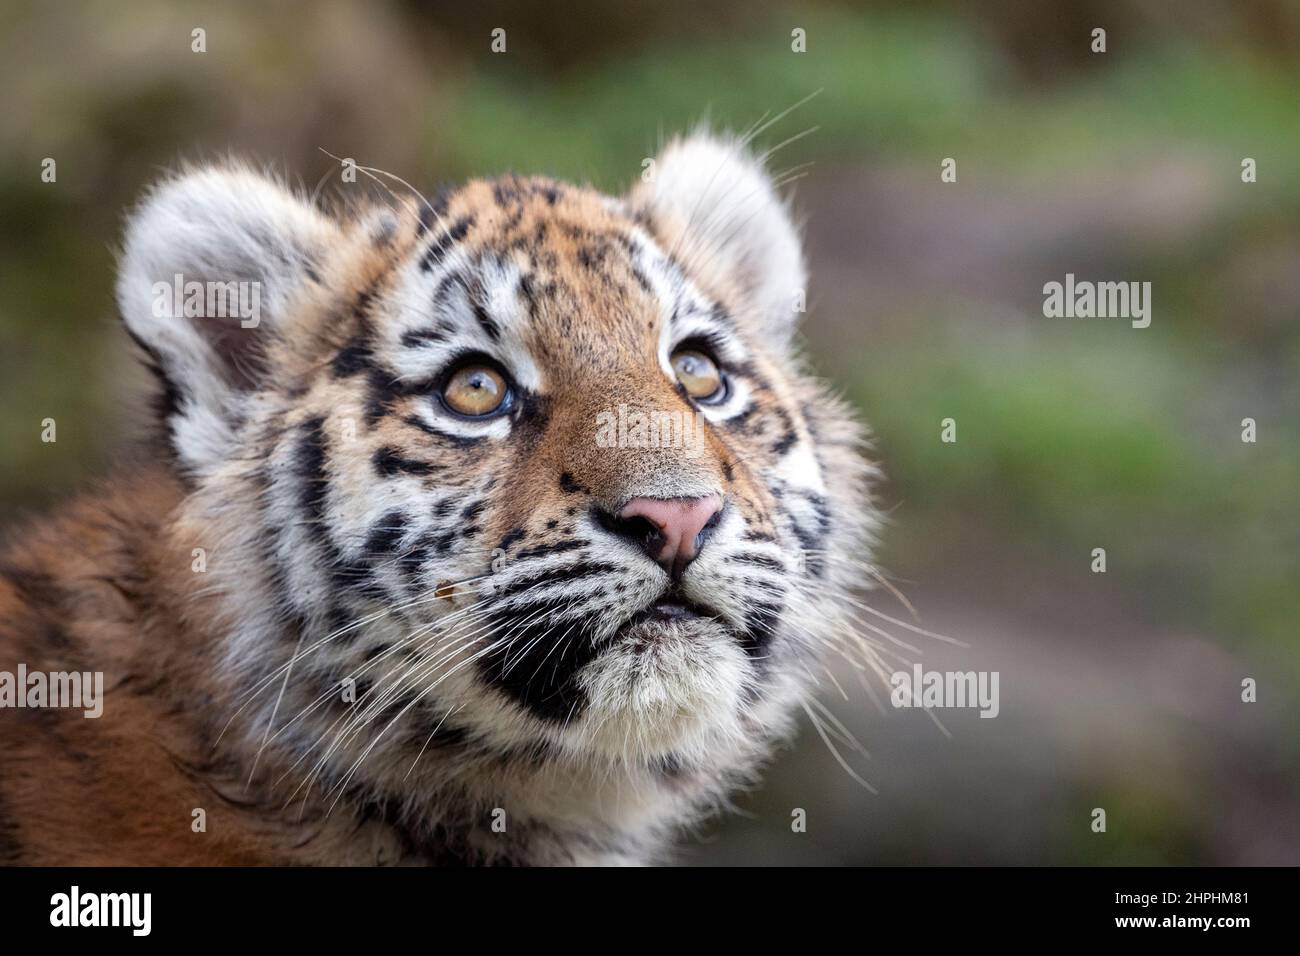 Amur (Siberian) tiger cub looking up Stock Photo